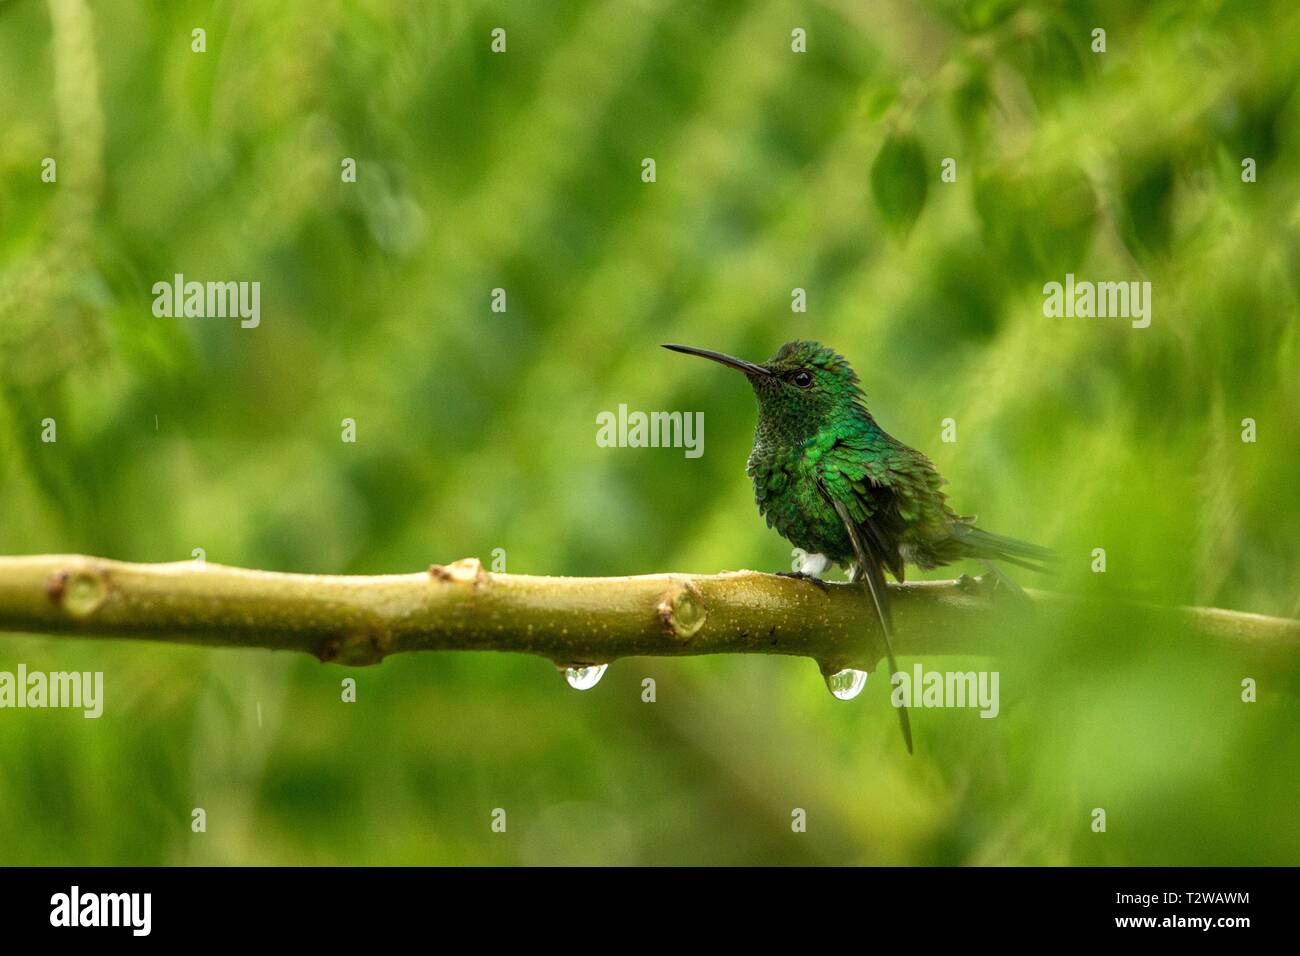 Steely évent assis sur hummingbird dans la pluie, de la direction générale de la forêt tropicale de hummingbird,Colombie,bird perching,petit oiseau posé sur tree Banque D'Images